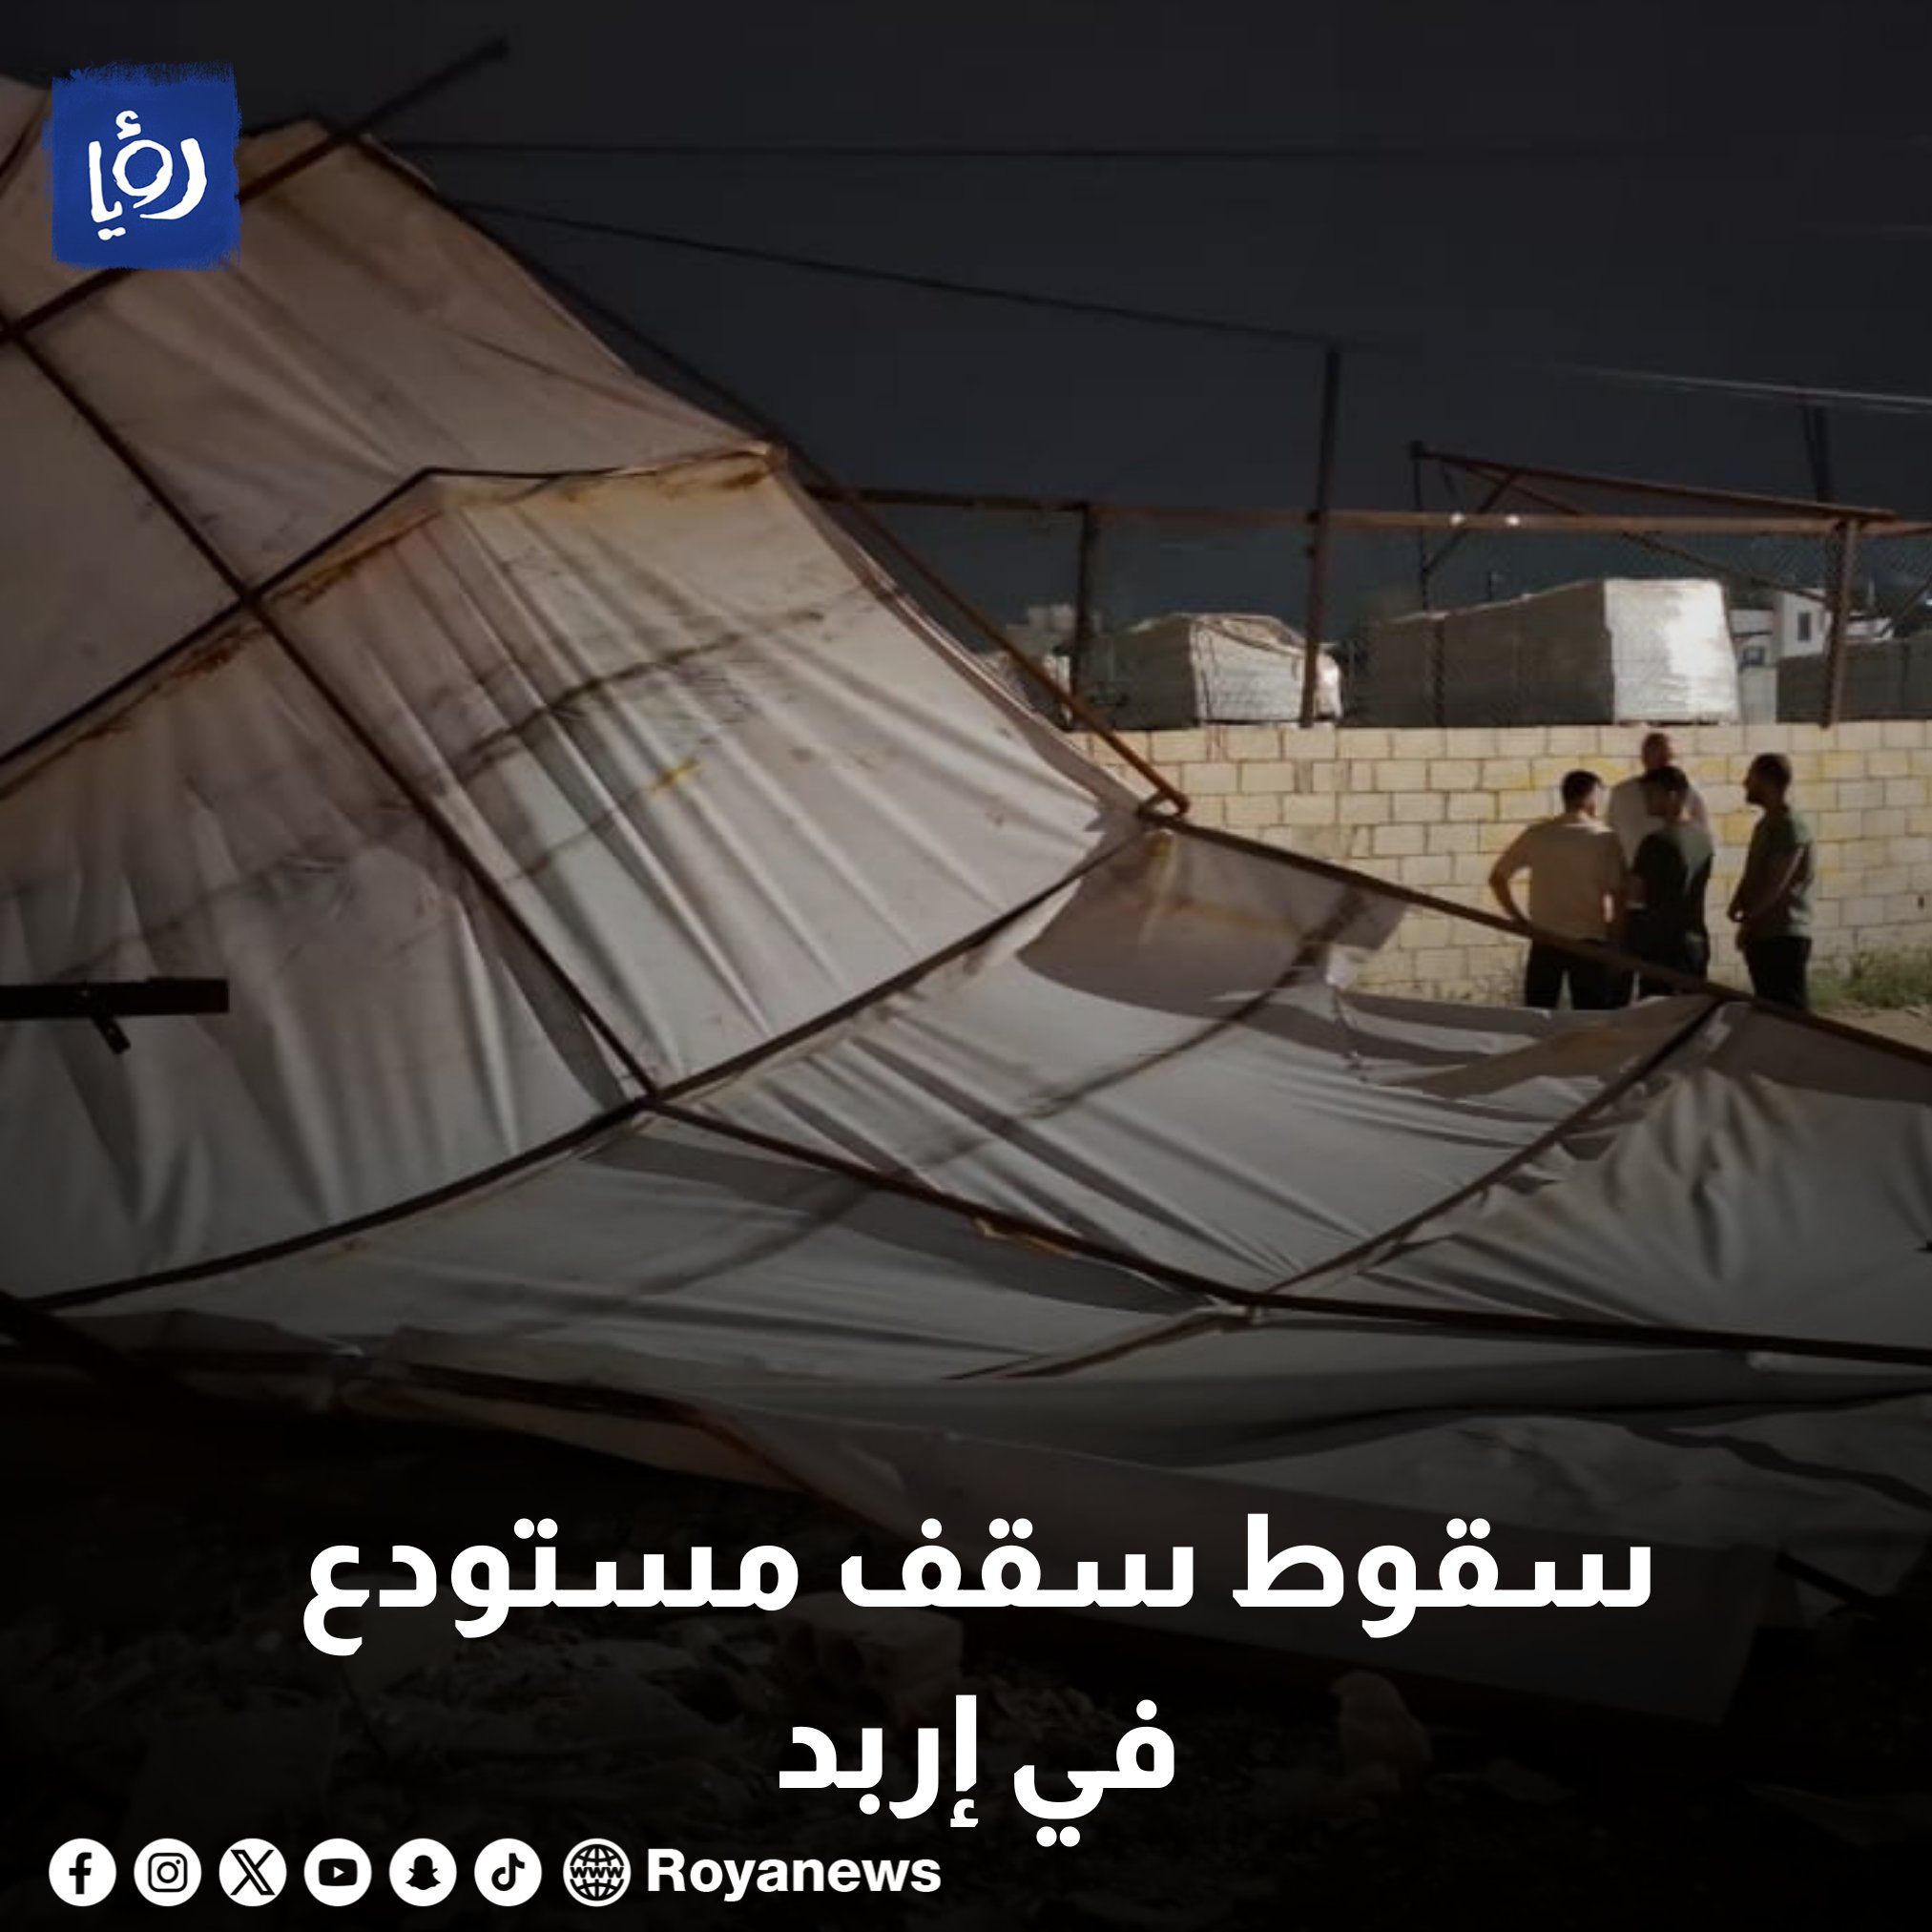 سقوط سقف مستودع في إربد والعناية الإلهية تحول دون وقوع إصابات #عاجل 